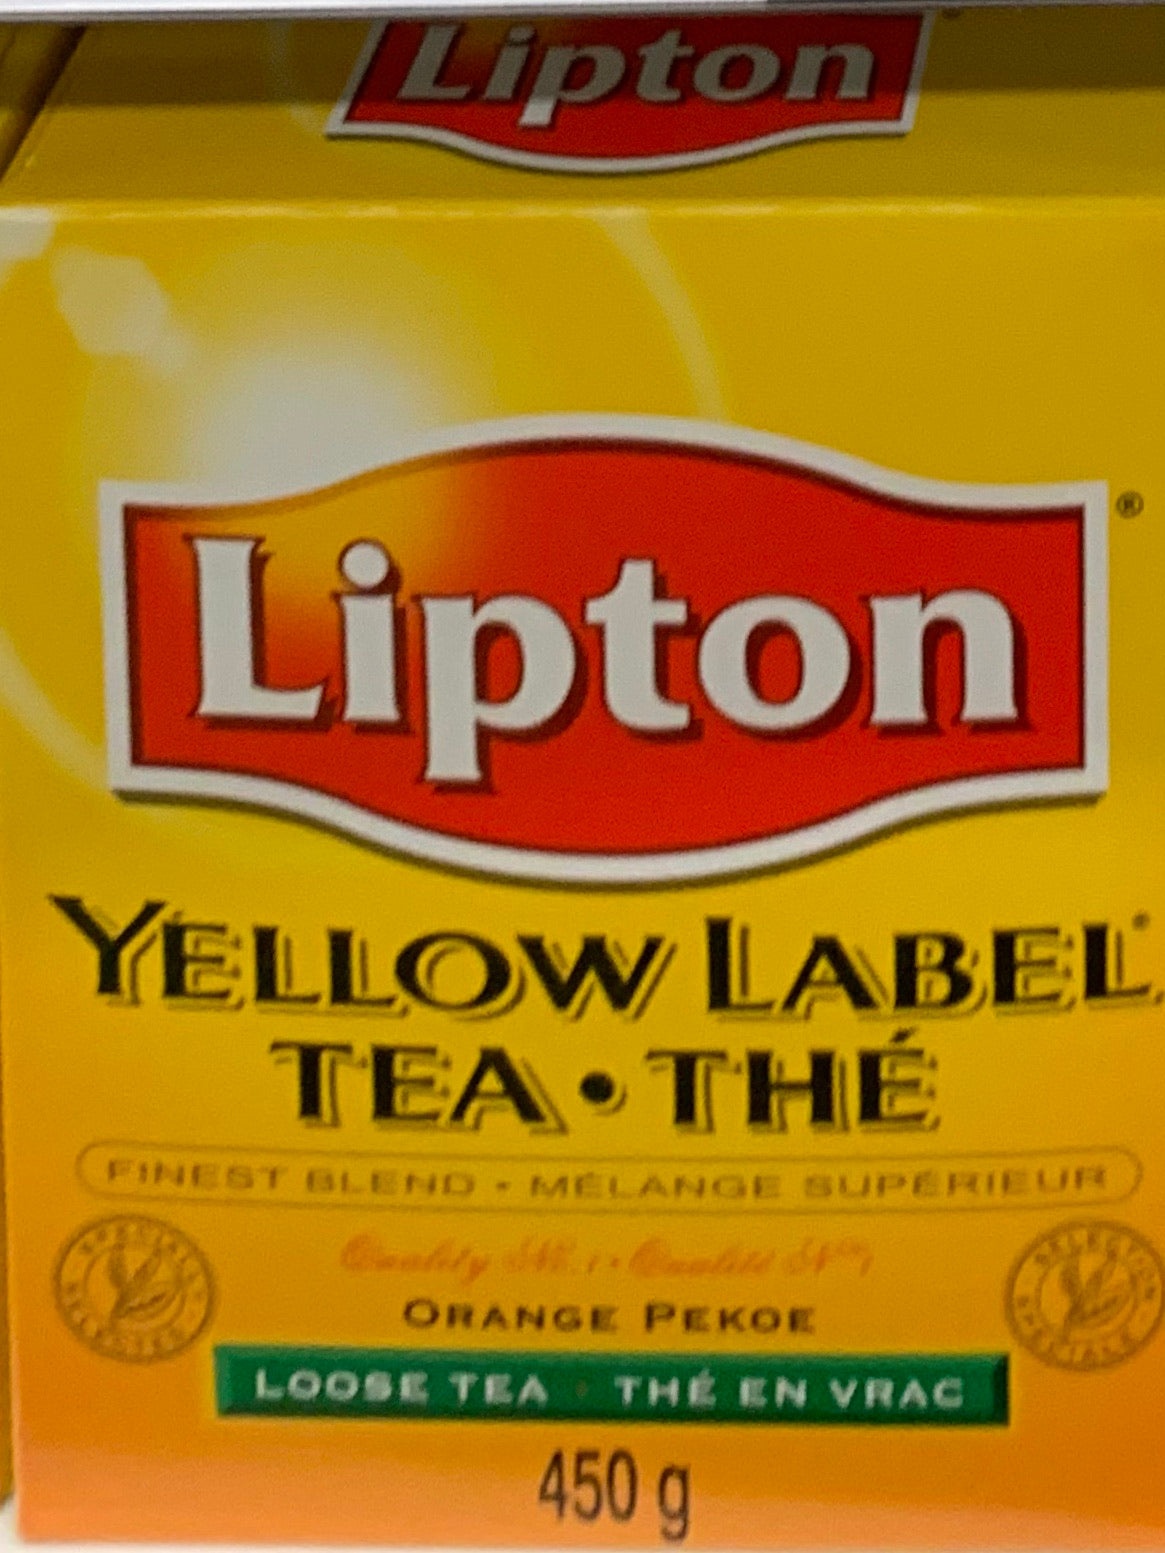 Yellow Label- Orange pekoe loose tea -Lipton 450 g